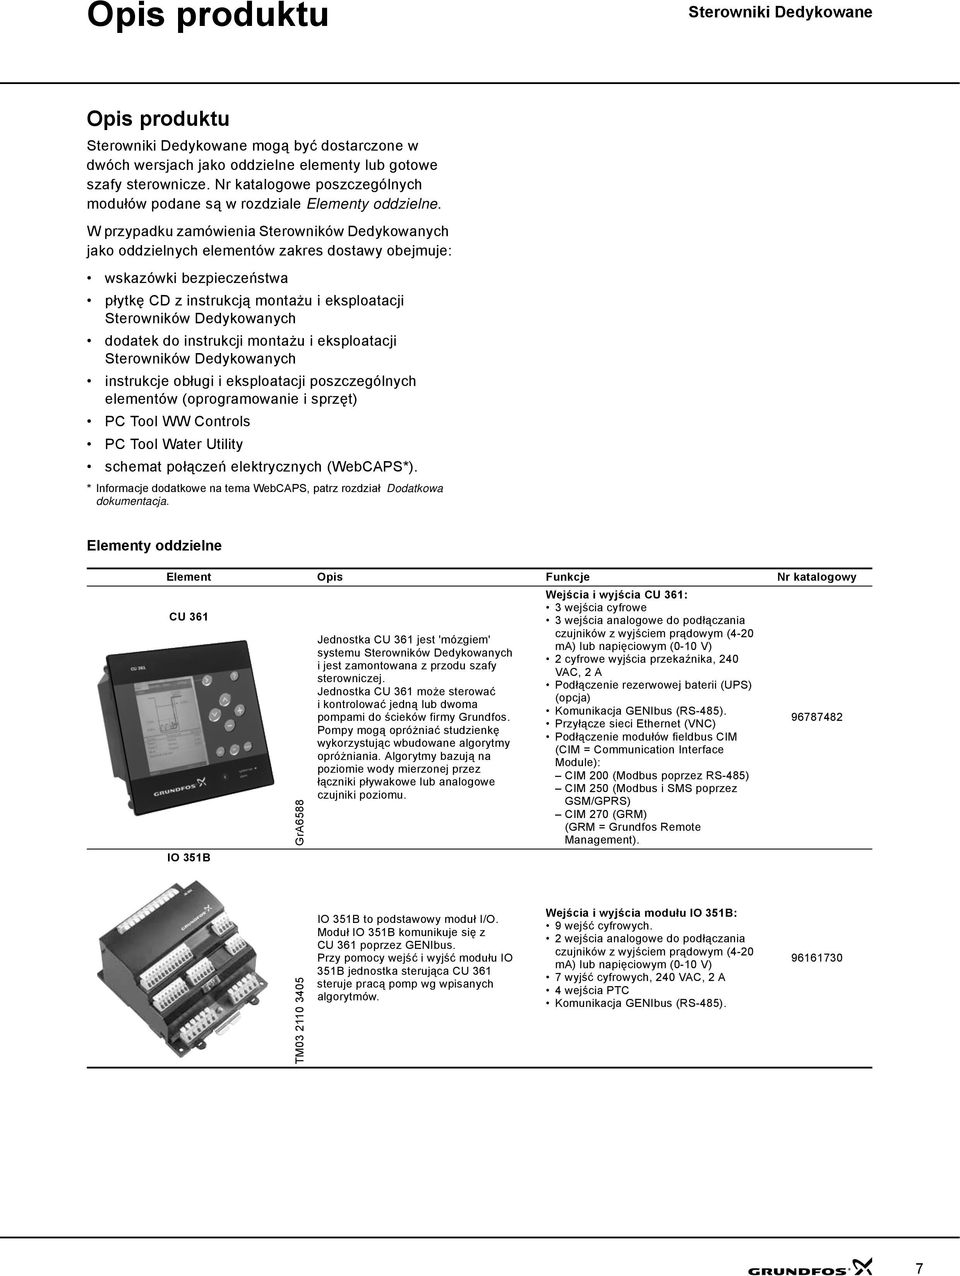 dodatek do instrukcji montażu i eksploatacji Sterowników Dedykowanych instrukcje obługi i eksploatacji poszczególnych elementów (oprogramowanie i sprzęt) PC Tool WW Controls PC Tool Water Utility